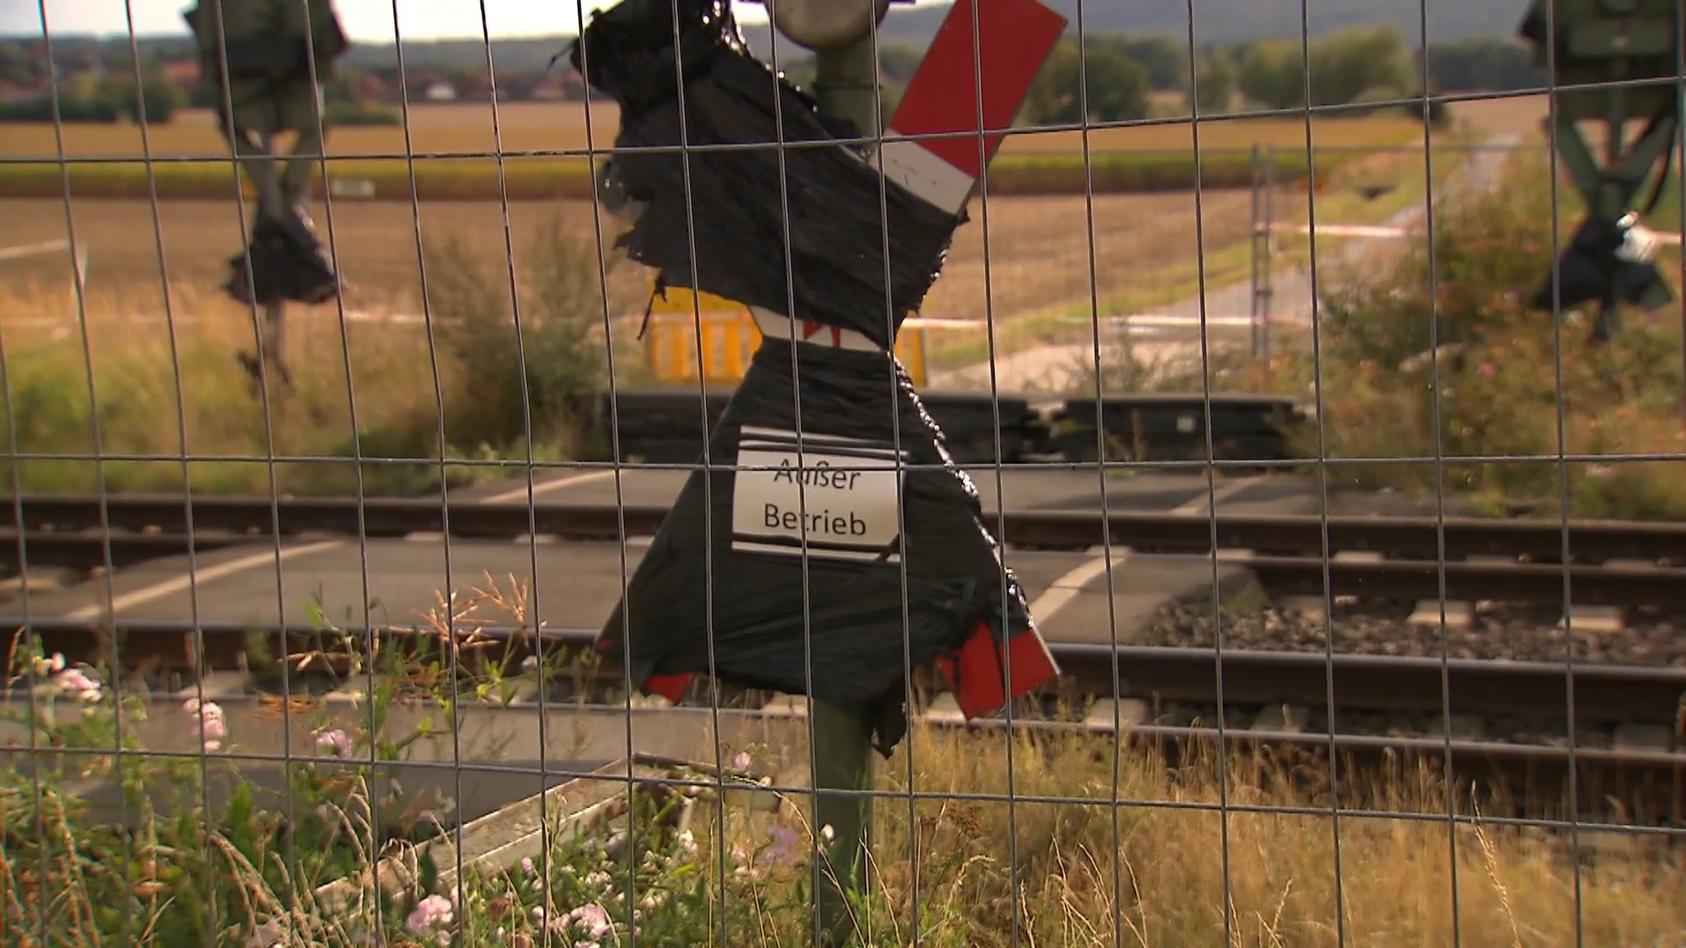 Bummelei der Bahn: Anwohner täglich in Lebensgefahr Fehlender Bahnübergang bereitet Kopfschmerzen